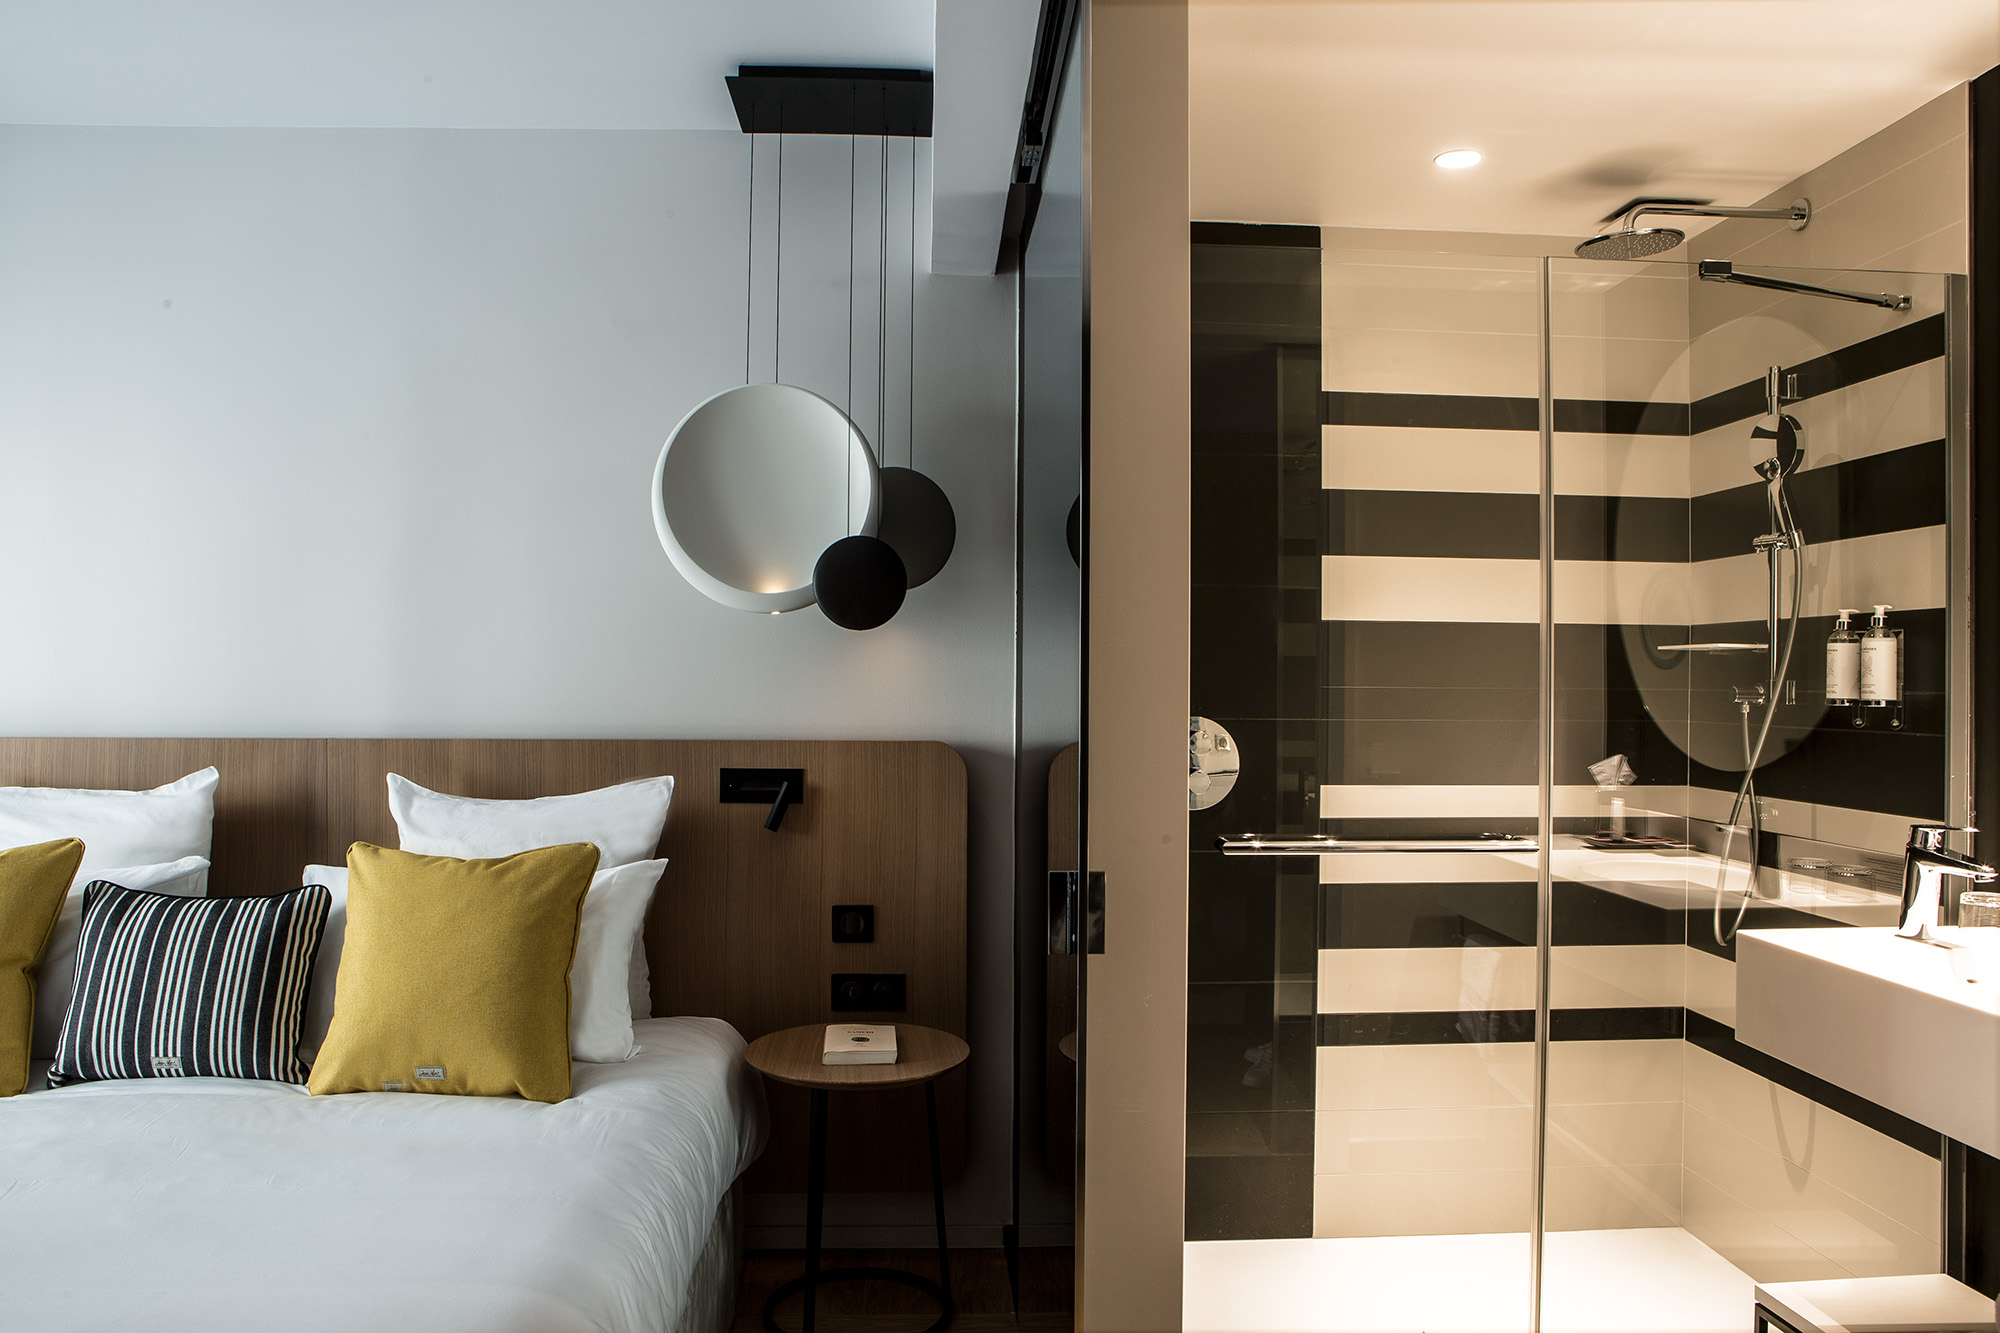 Hôtel Villa Koegui Bayonne, hôtel lifestyle 4 étoiles designé par le studio d'architecture d'intérieur jean-philippe nuel, pays basque, chambre, salle de bain, rayure bayadère